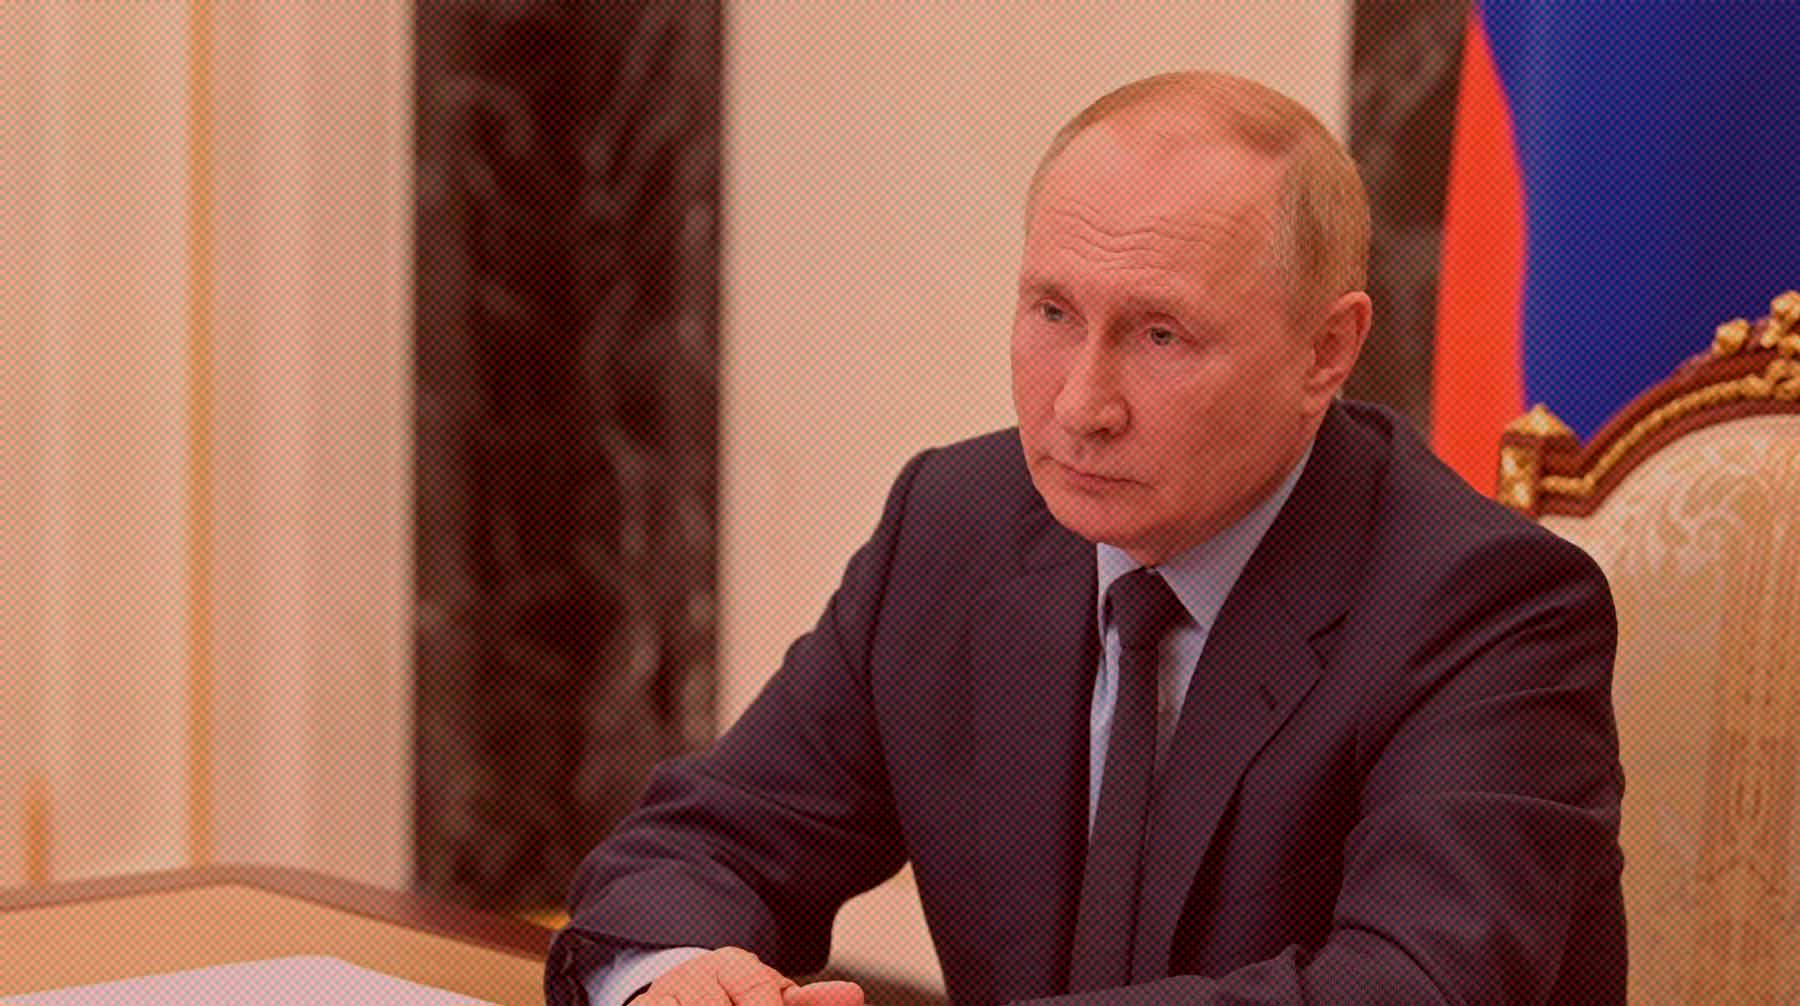 Жители ЛНР, ДНР искренне желают воссоединиться с РФ, отметил глава государства Фото: Global Look Press / Kremlin Pool